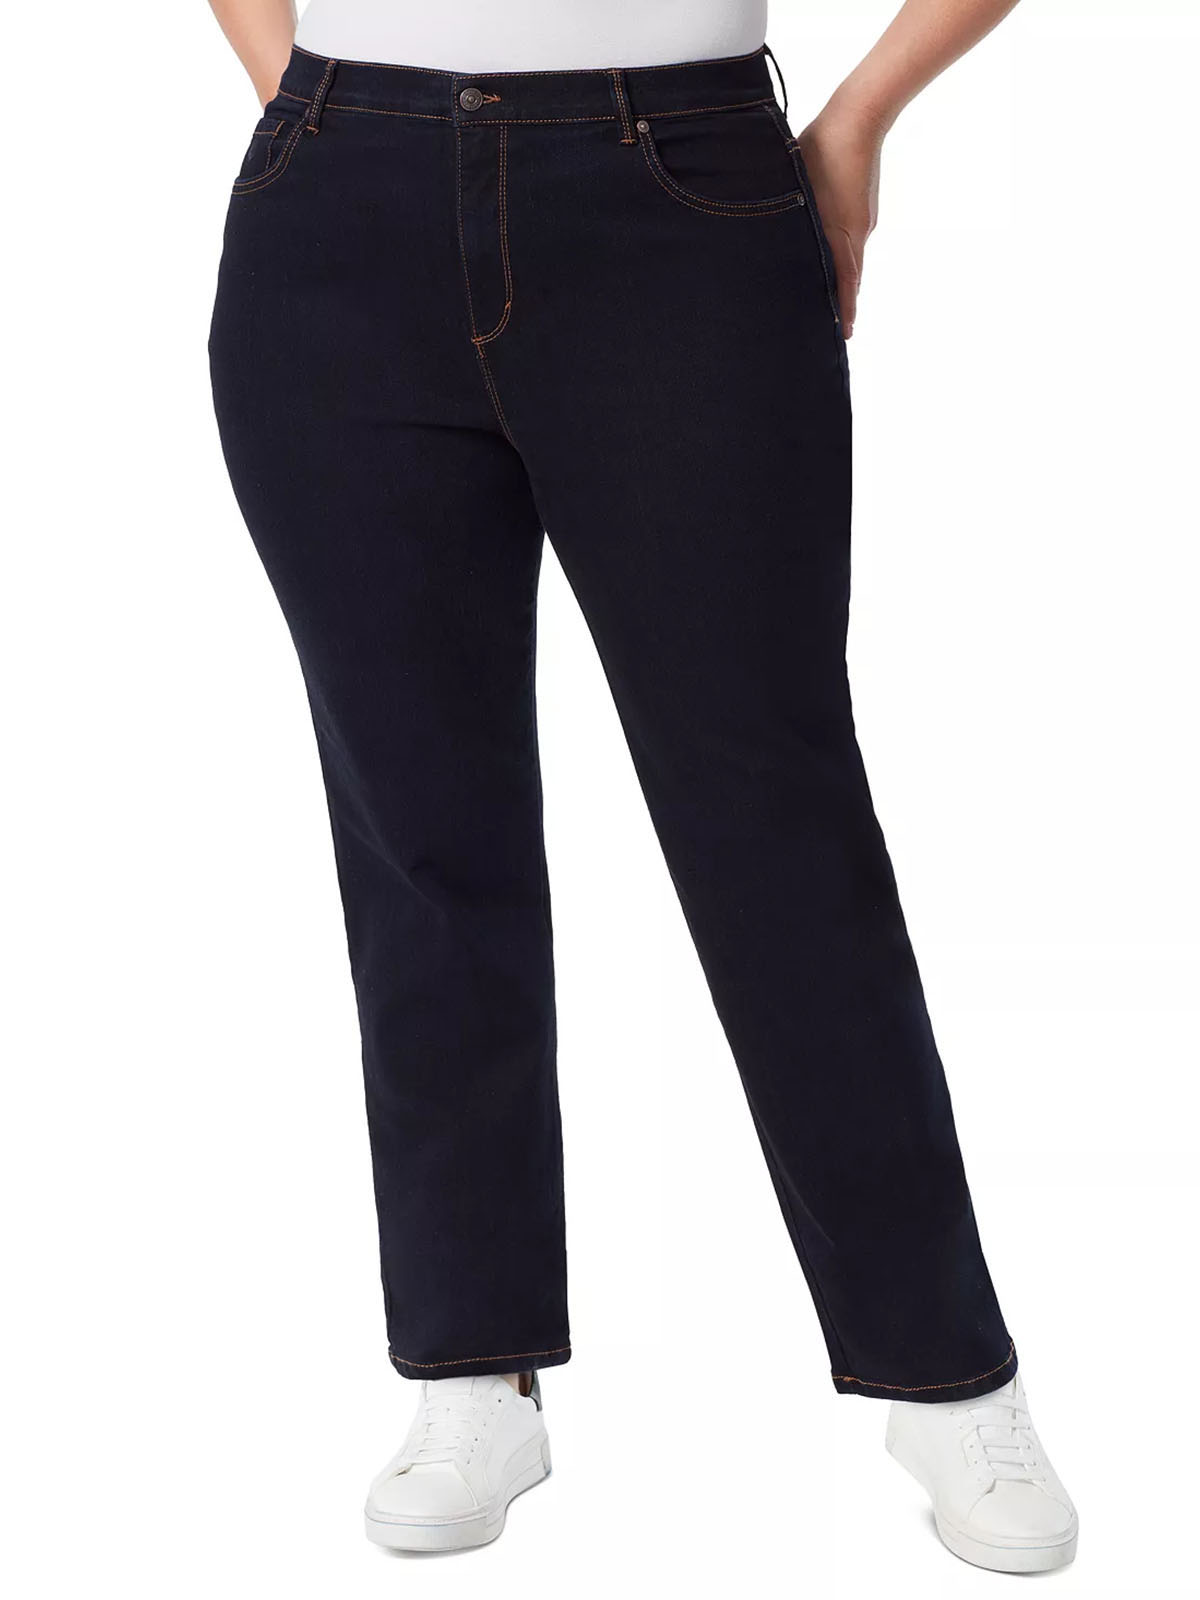 Gloria Vanderbilt RINSE-NOIR Amanda Classic Tapered Jeans - Plus Size 18 to  26 (